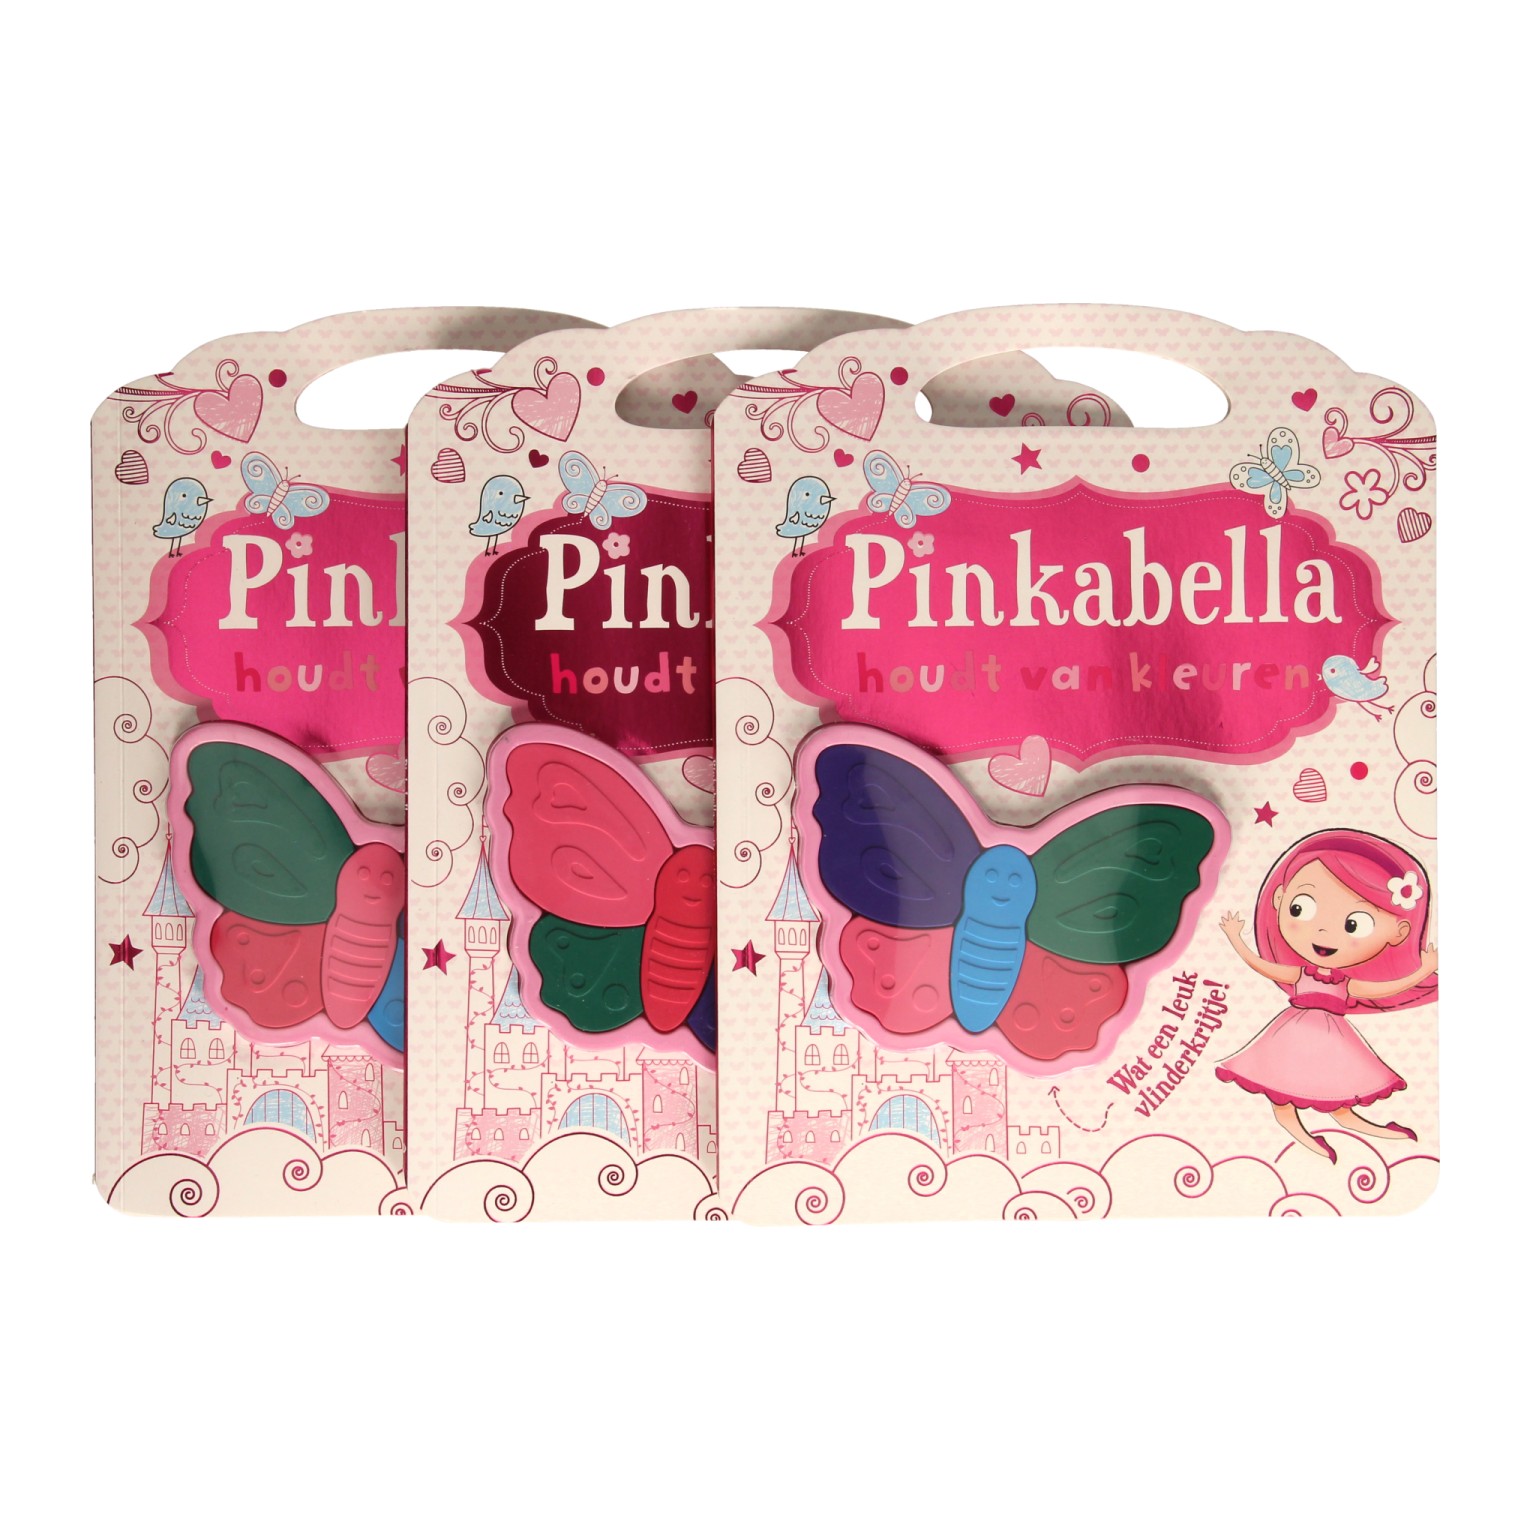 Pinkabella aime colorier avec des crayons de cire en forme de papillon